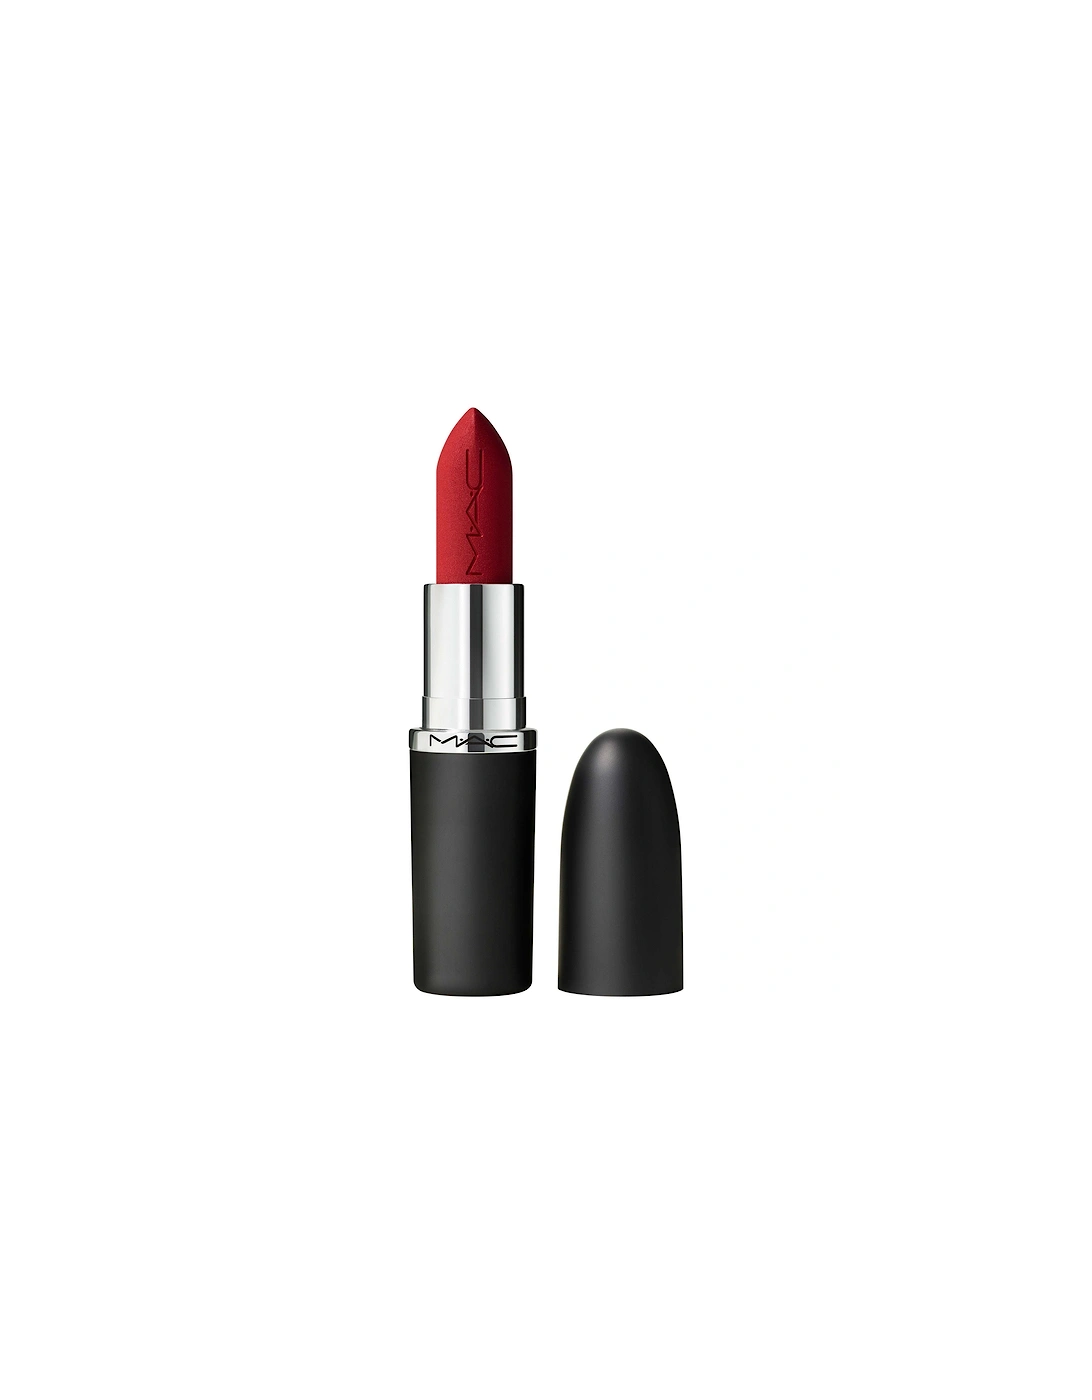 Macximal Matte Lipstick - Russian Red, 2 of 1